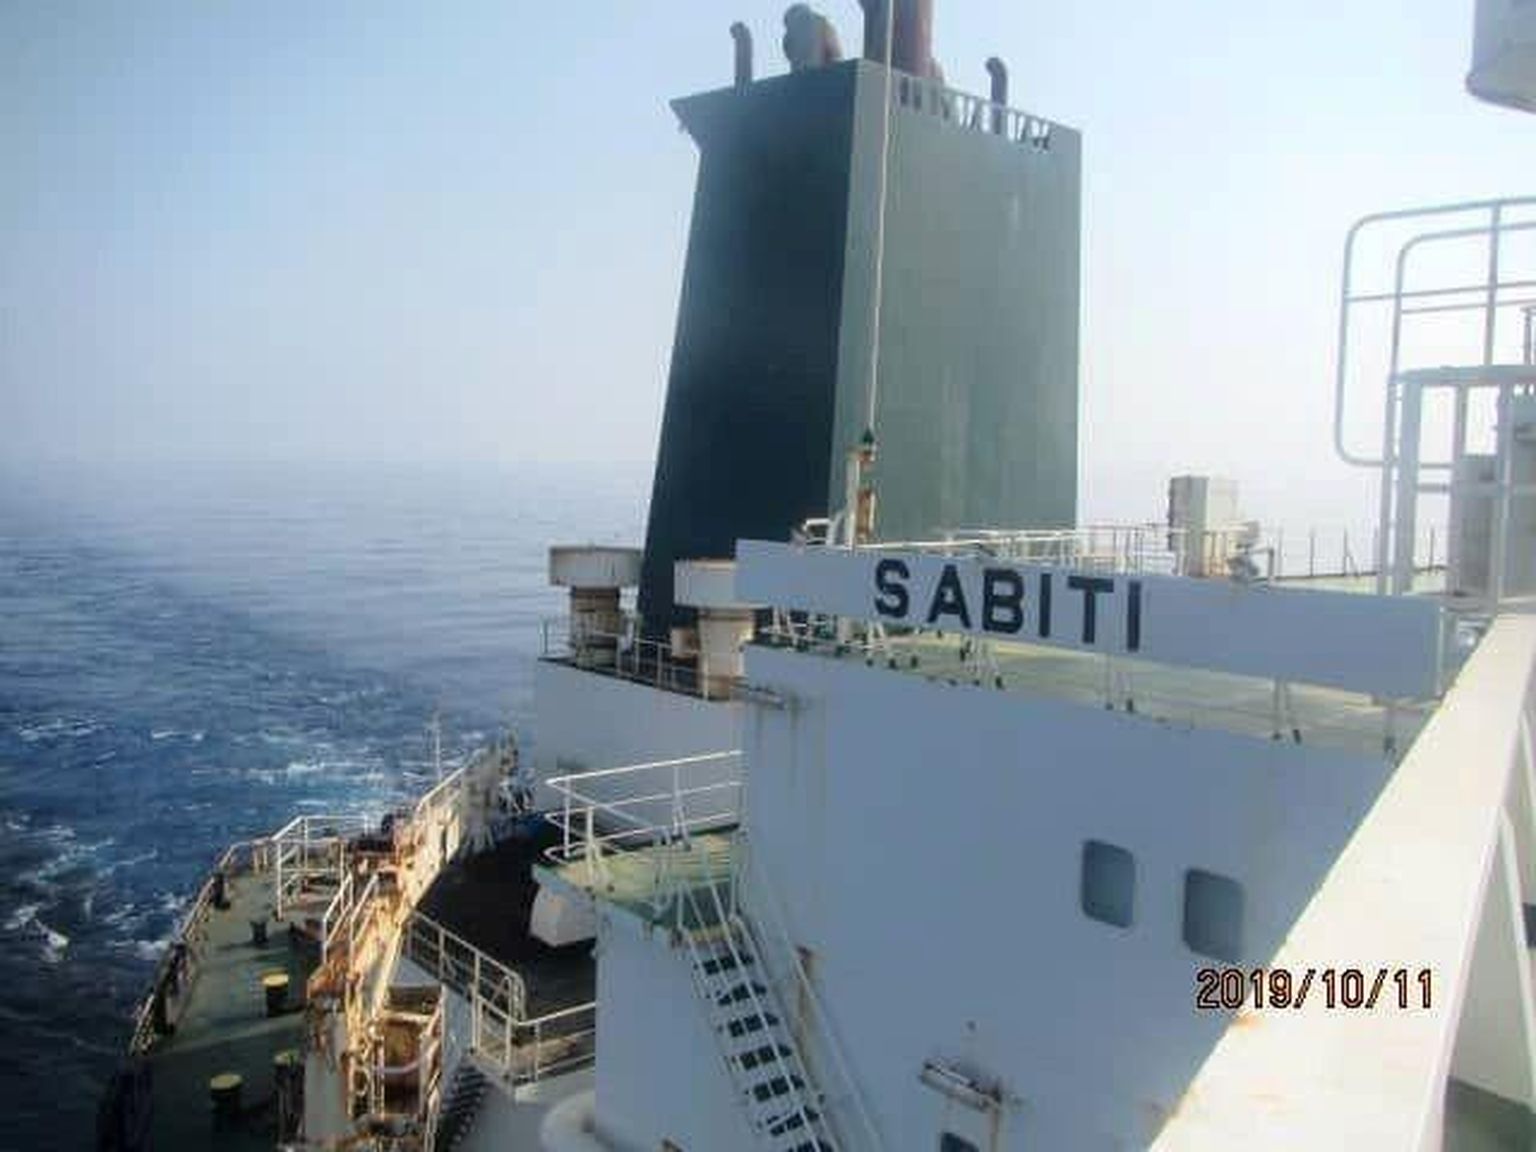 Iraani tanker Sabiti sai riigi allikate väitel eile Saudi Araabia rannikul kaks raketitabamust. Samas pole riigimeedias avaldatud kaadritelt kahjustusi näha.